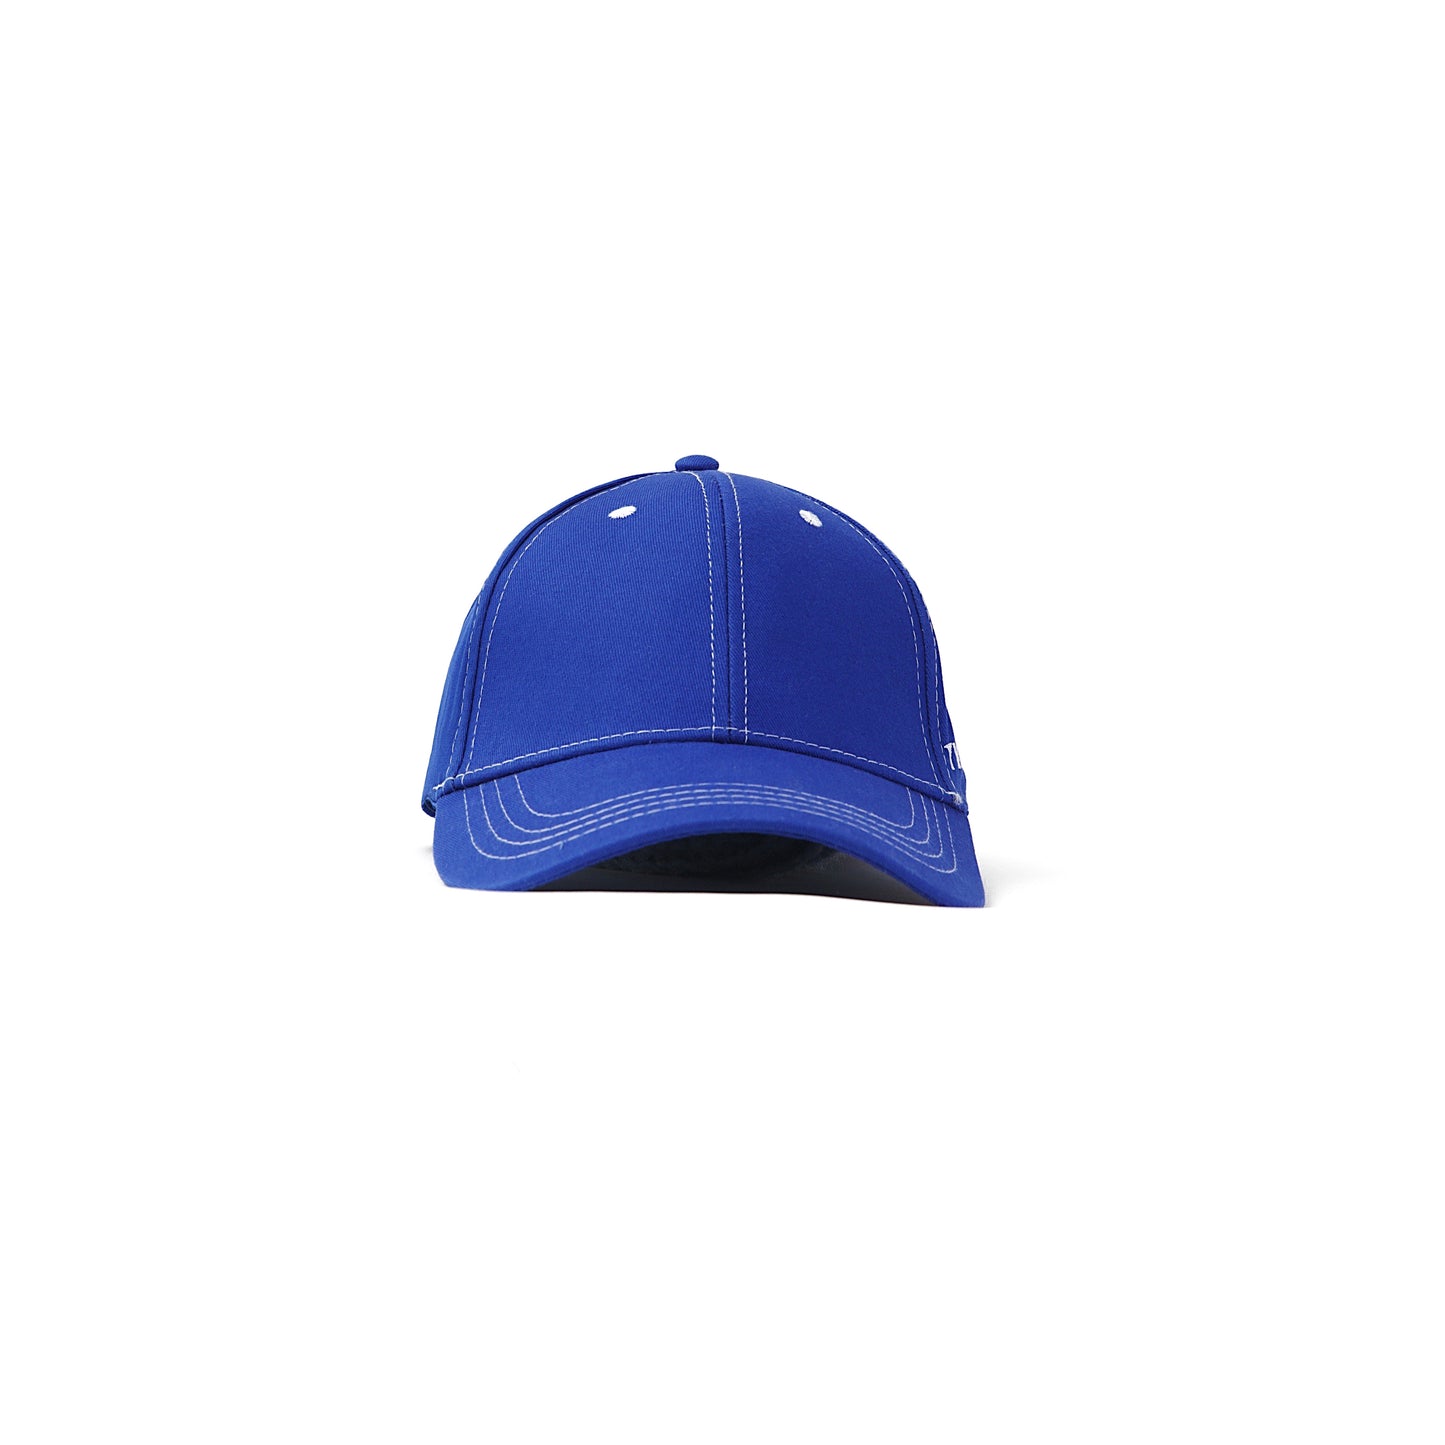 YYATOMIC LOGO BALL CAP (BLUE)